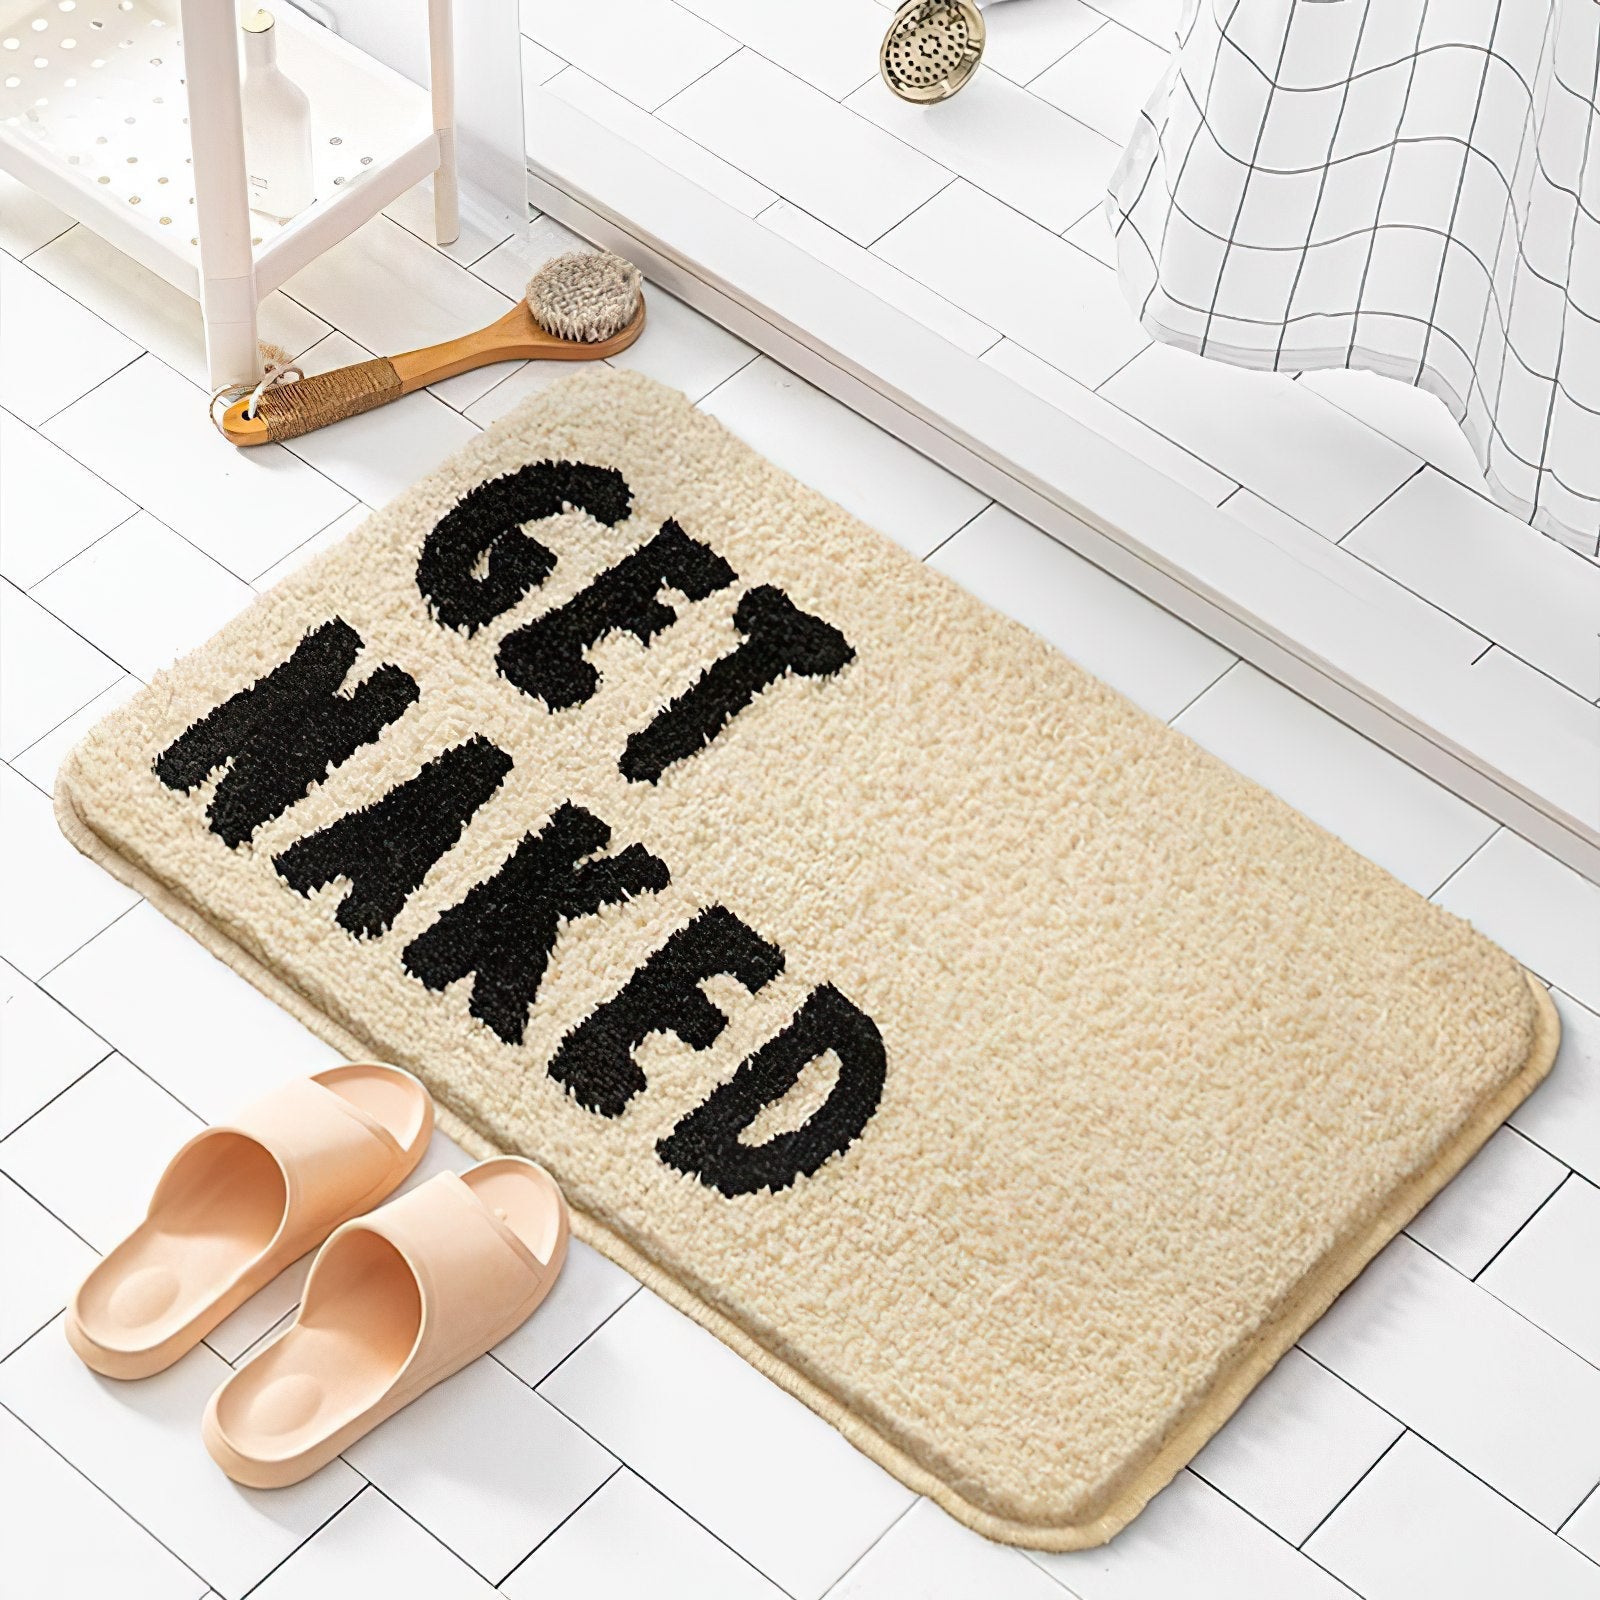 Get Naked Bathroom Mat